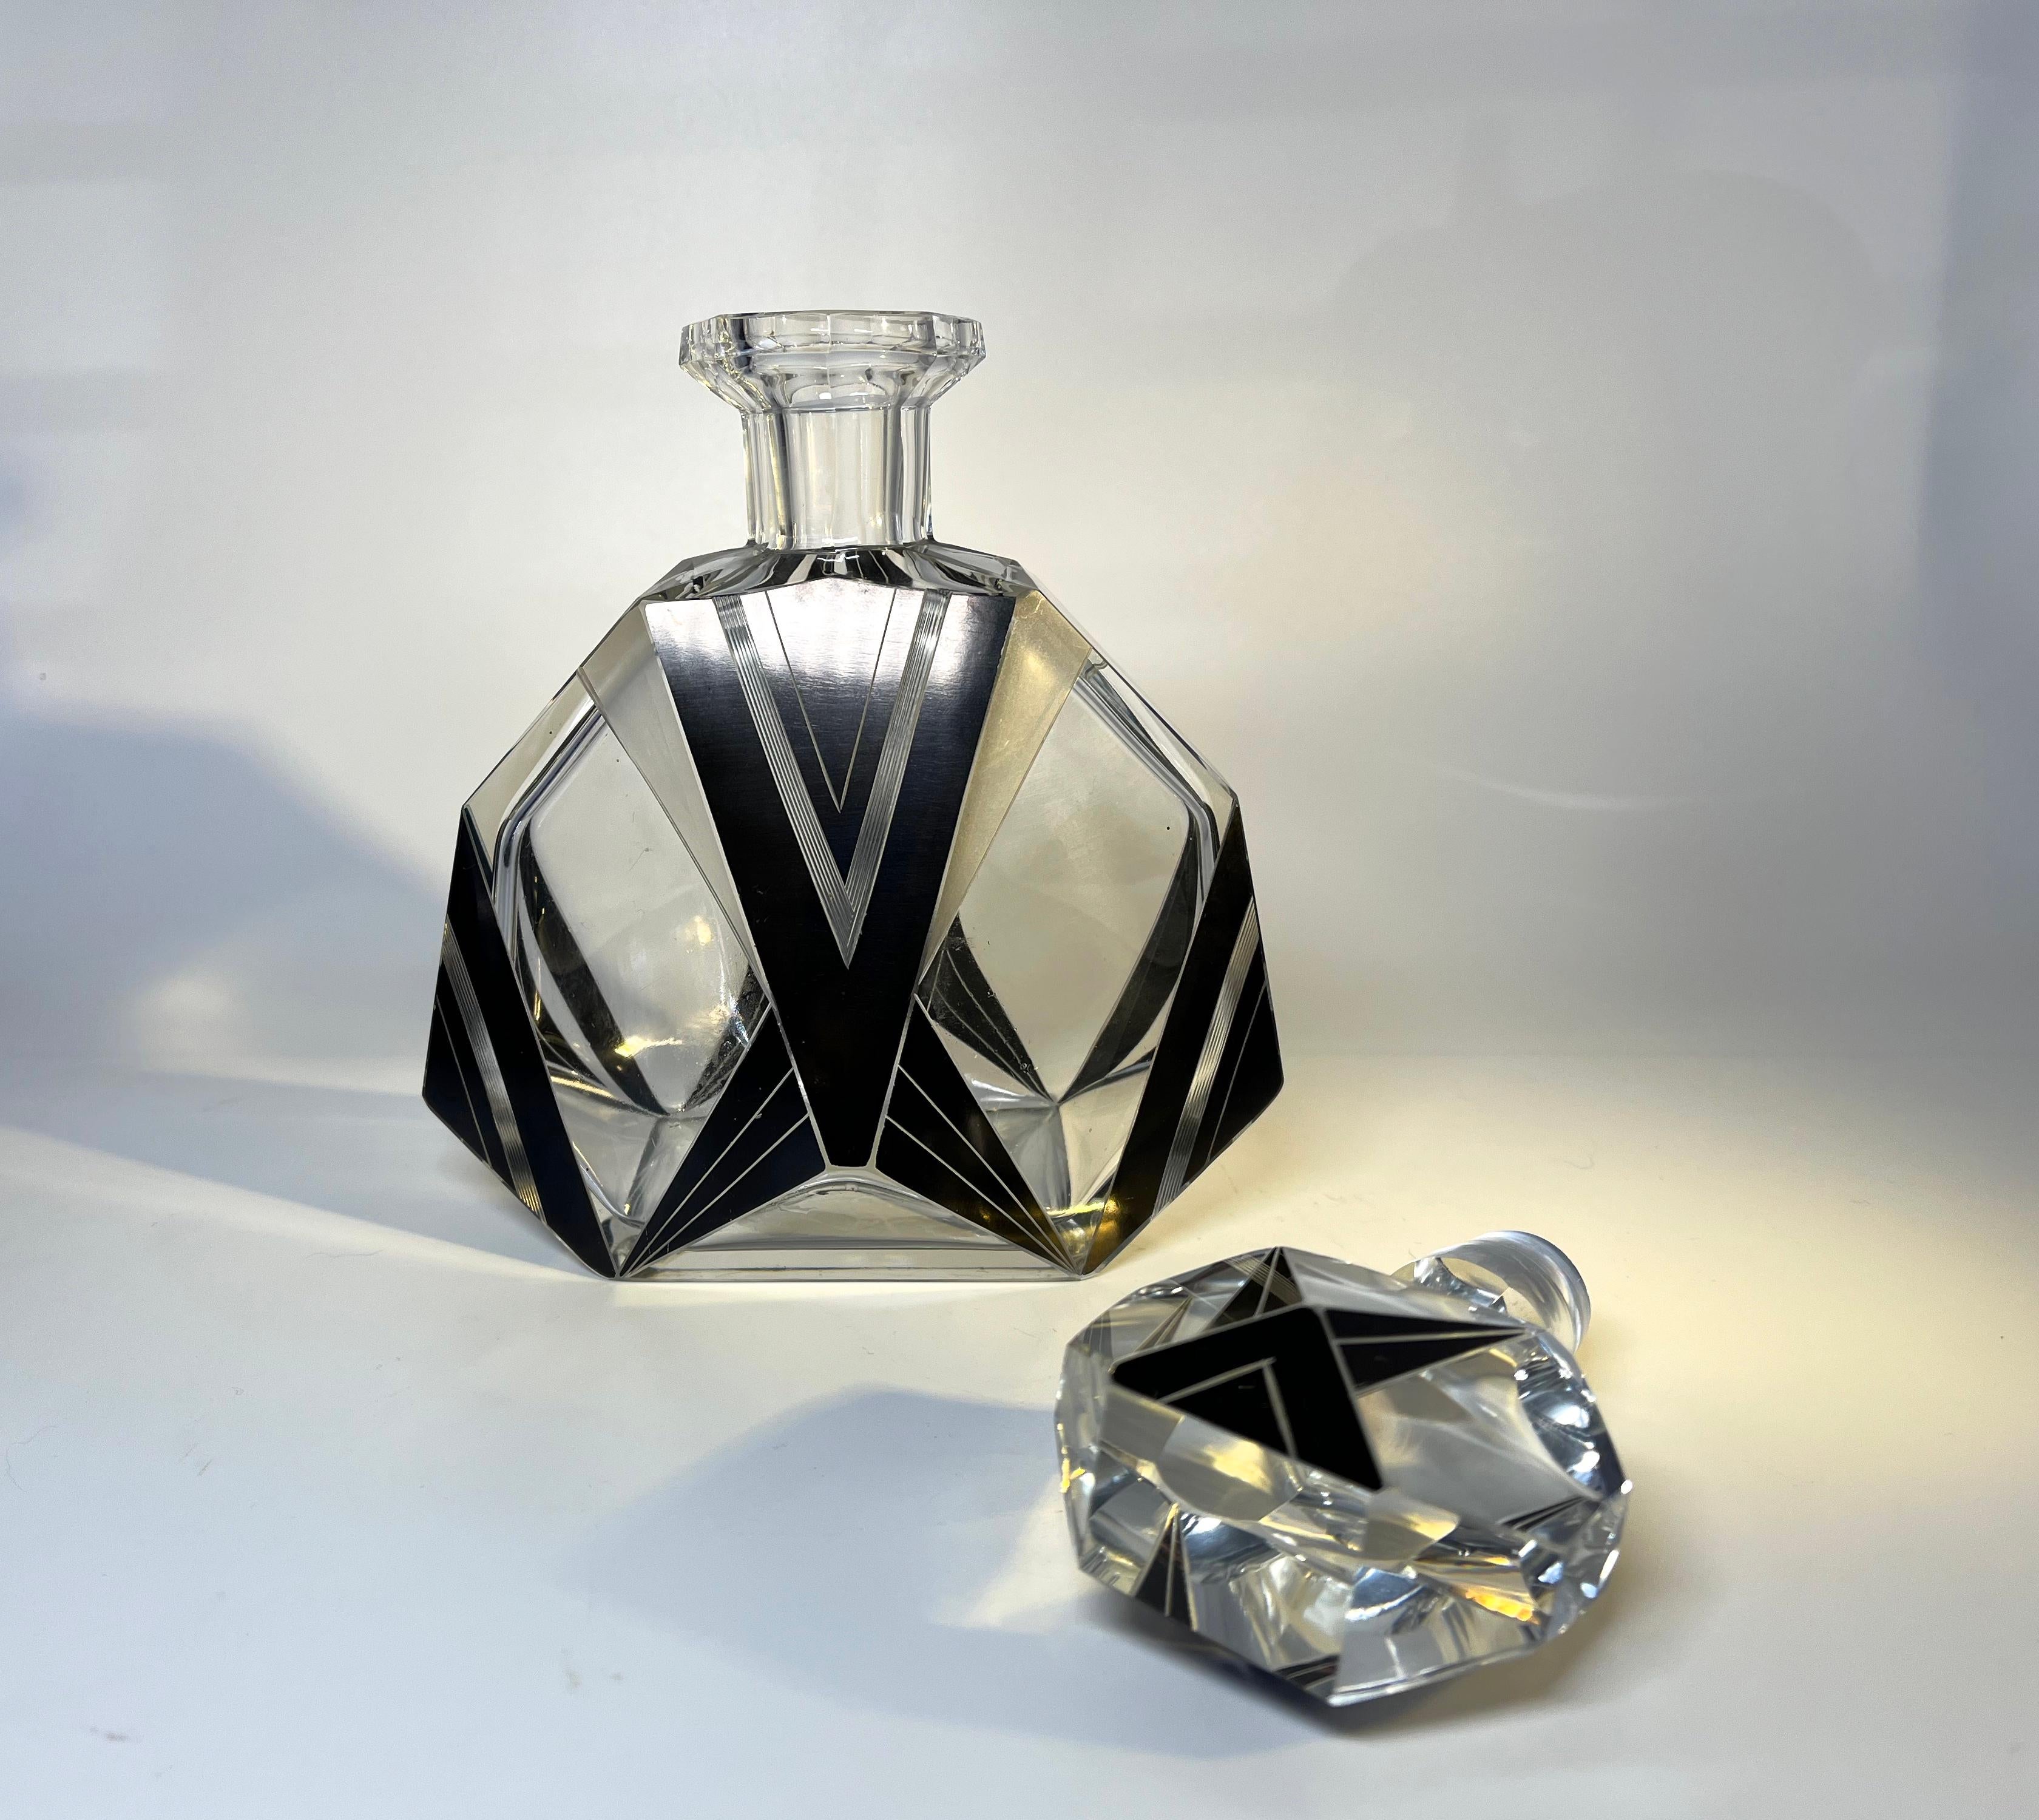 Oversized, Decadent Art Deco Czech Crystal Bohemian Perfume Flacon 1930's For Sale 2